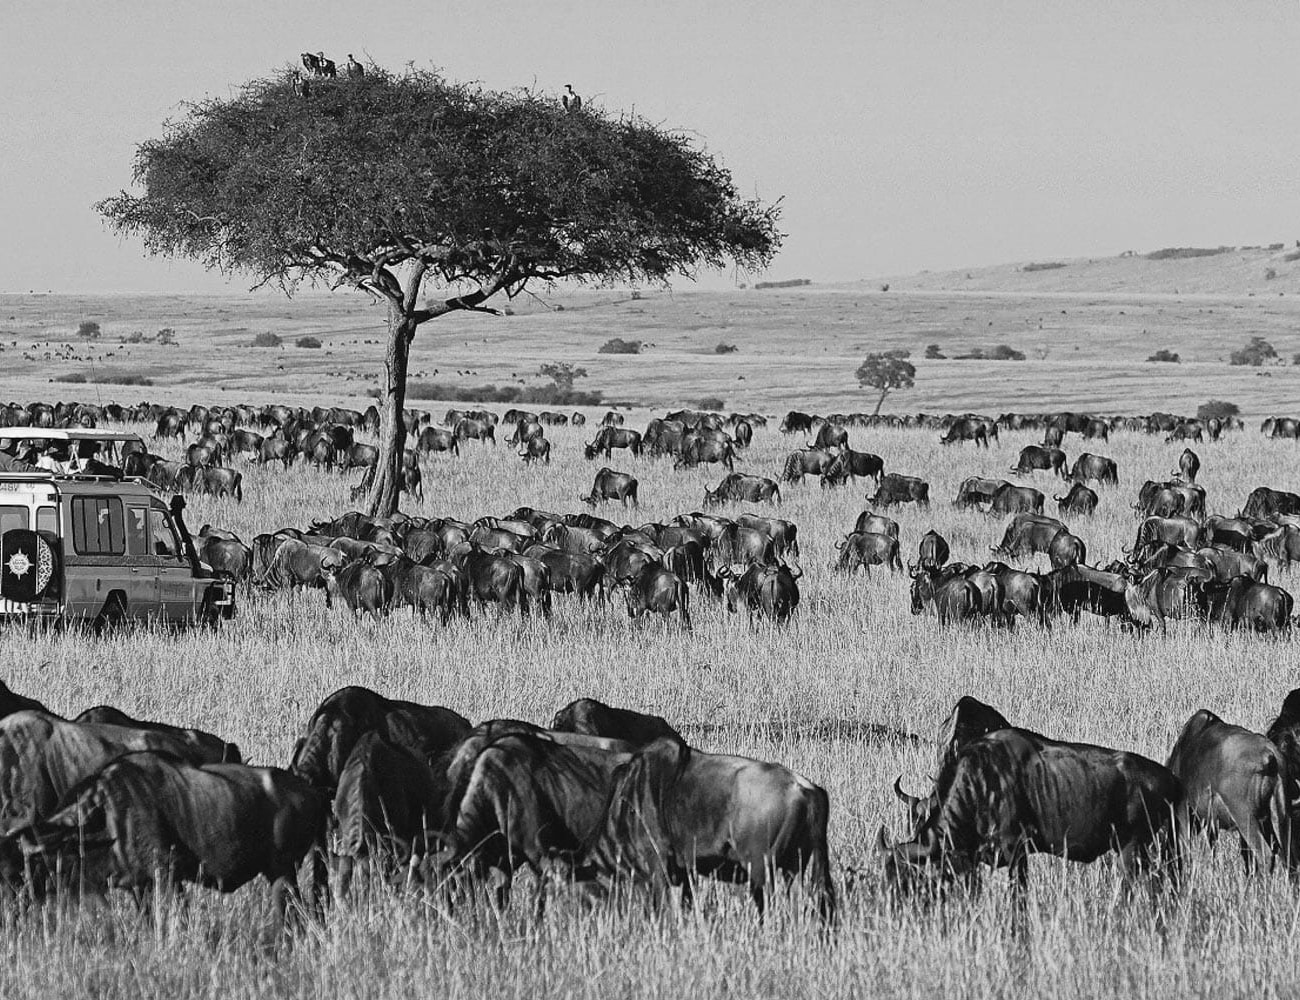 Wildlife at Maasai Mara National Reserve